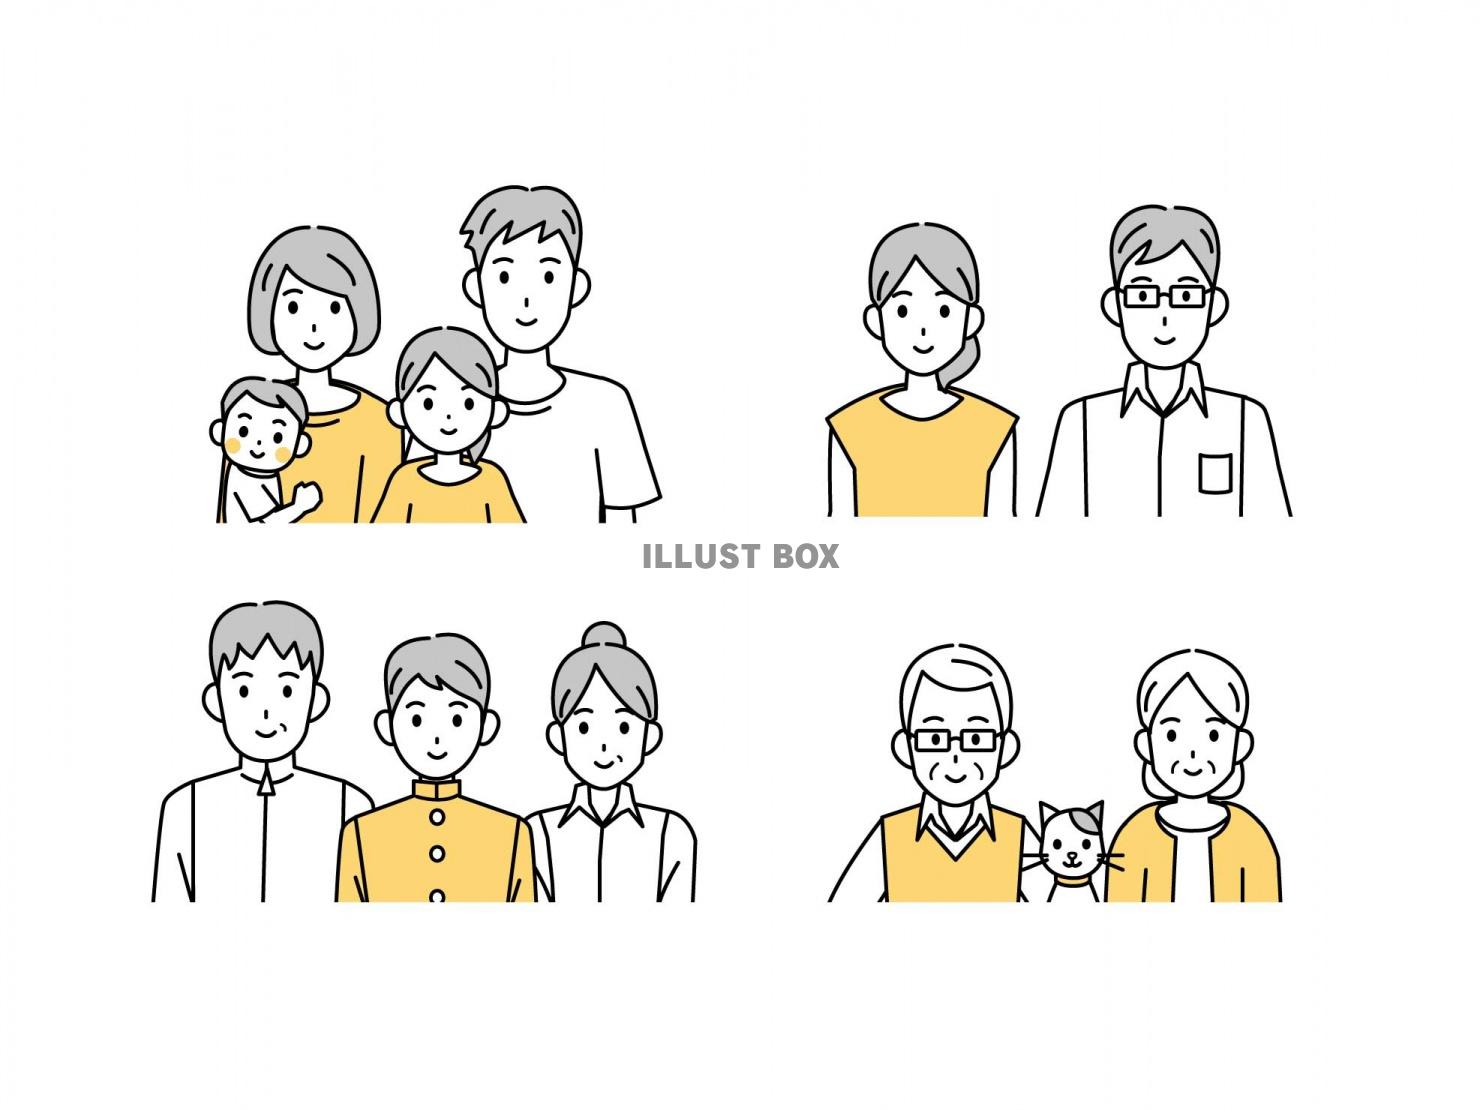  様々な年齢層の家族のイラスト